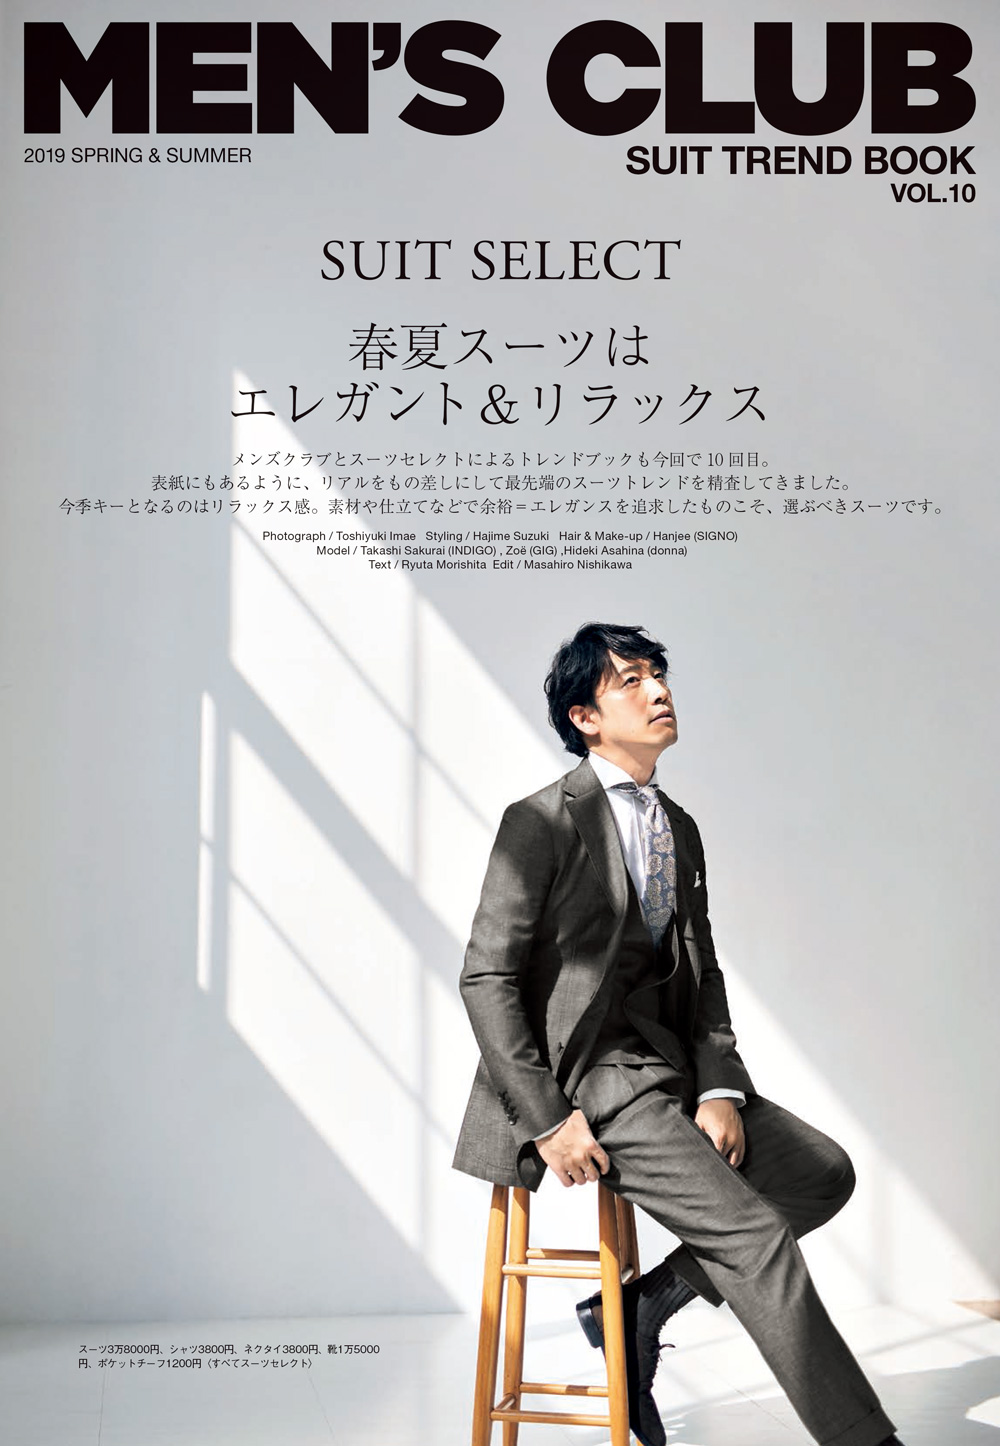 雑誌掲載情報 Men S Club 3 25発売号 Information Suit Select スーツセレクト公式ブランドサイト